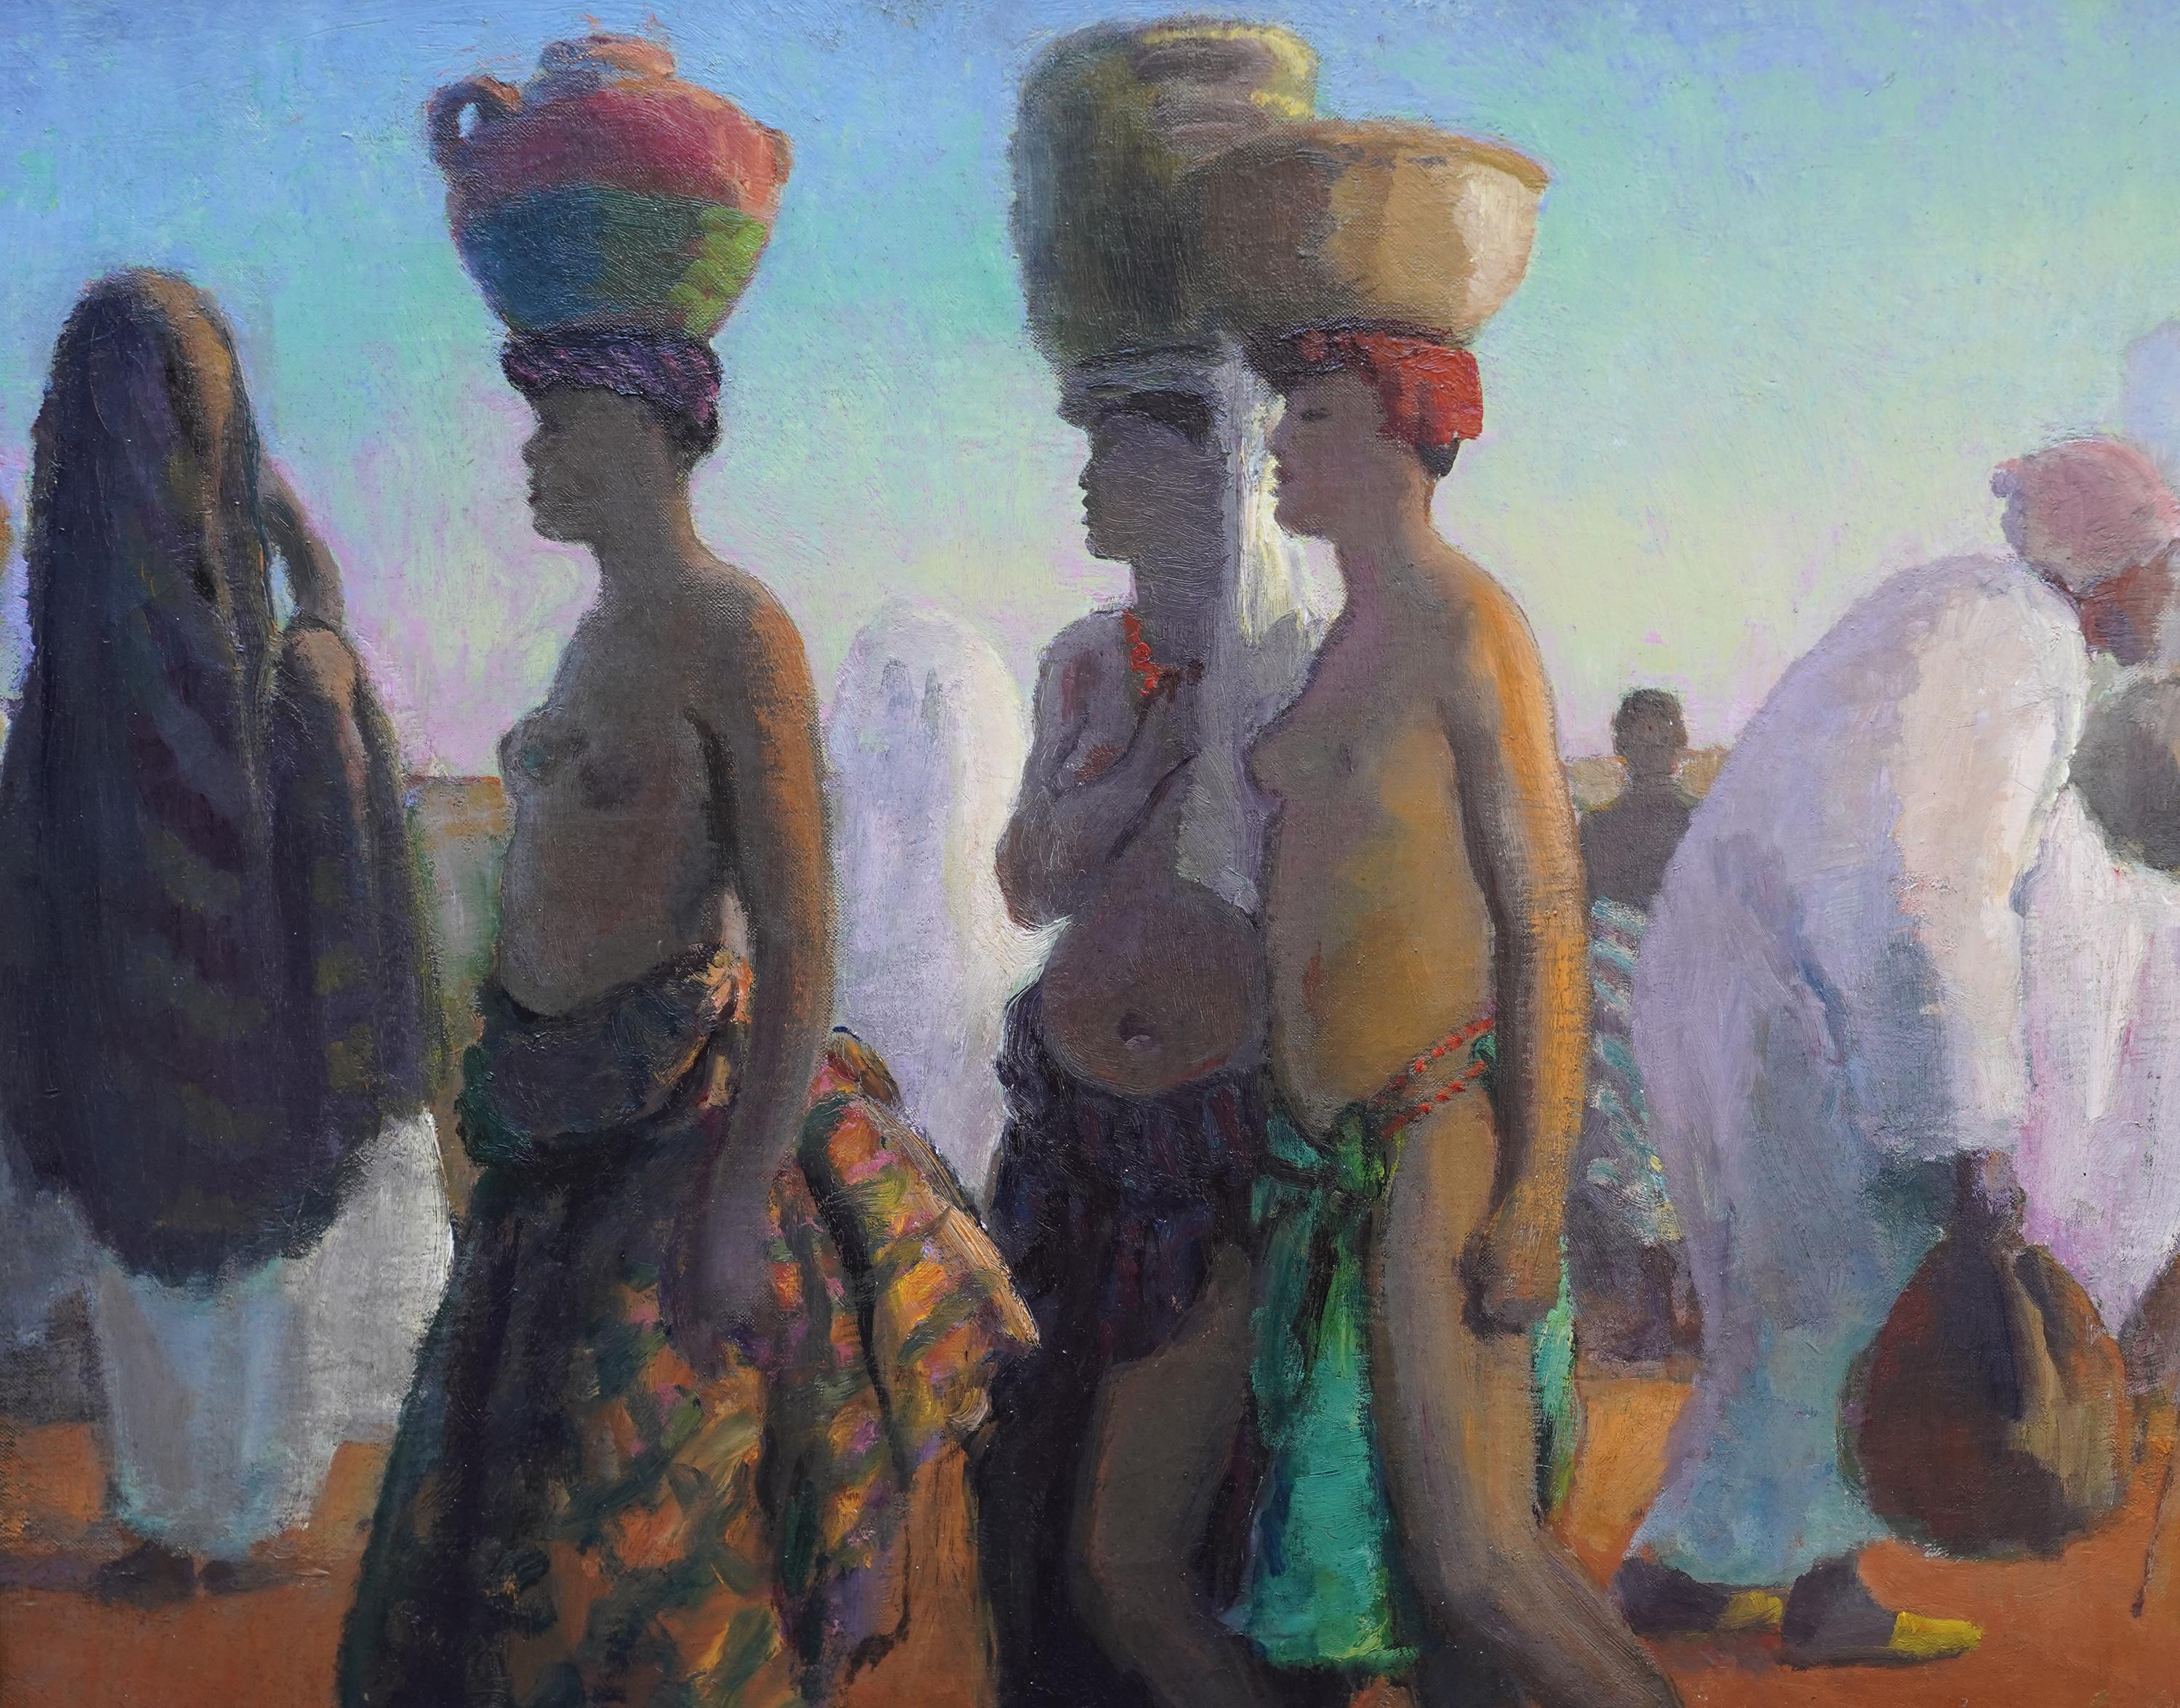 Ritratto di portatori d'acqua, Africa - pittura ad olio di arte orientalista britannica del 1920 - Painting Postimpressionismo di Spencer Pryse